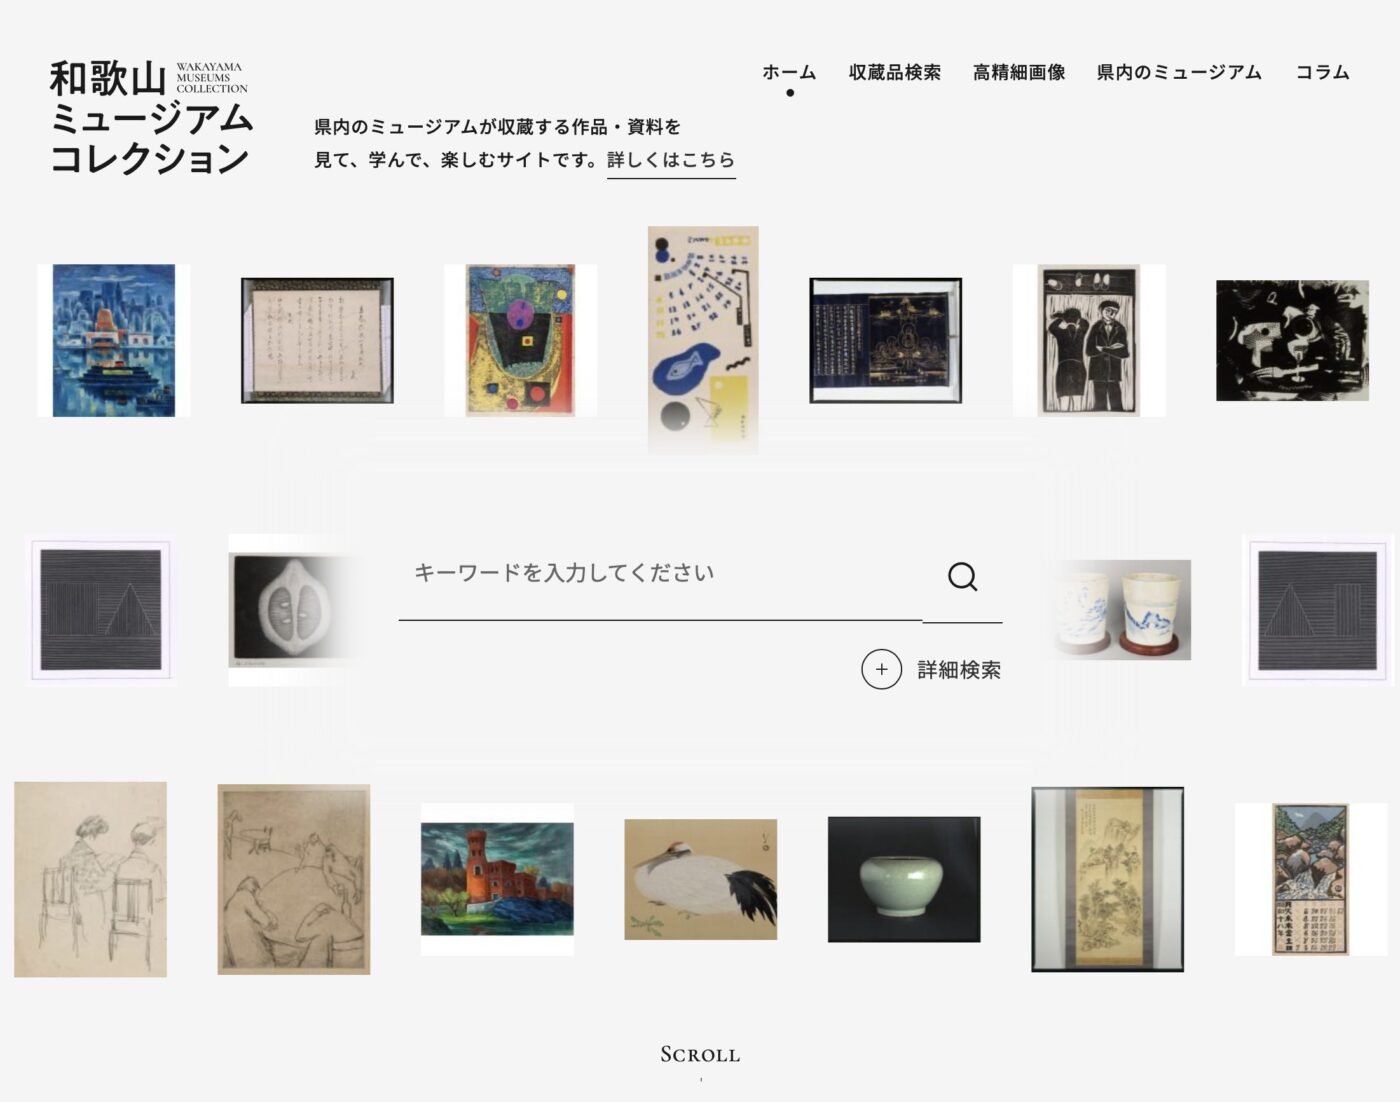 ポータルサイト「和歌山ミュージアムコレクション」